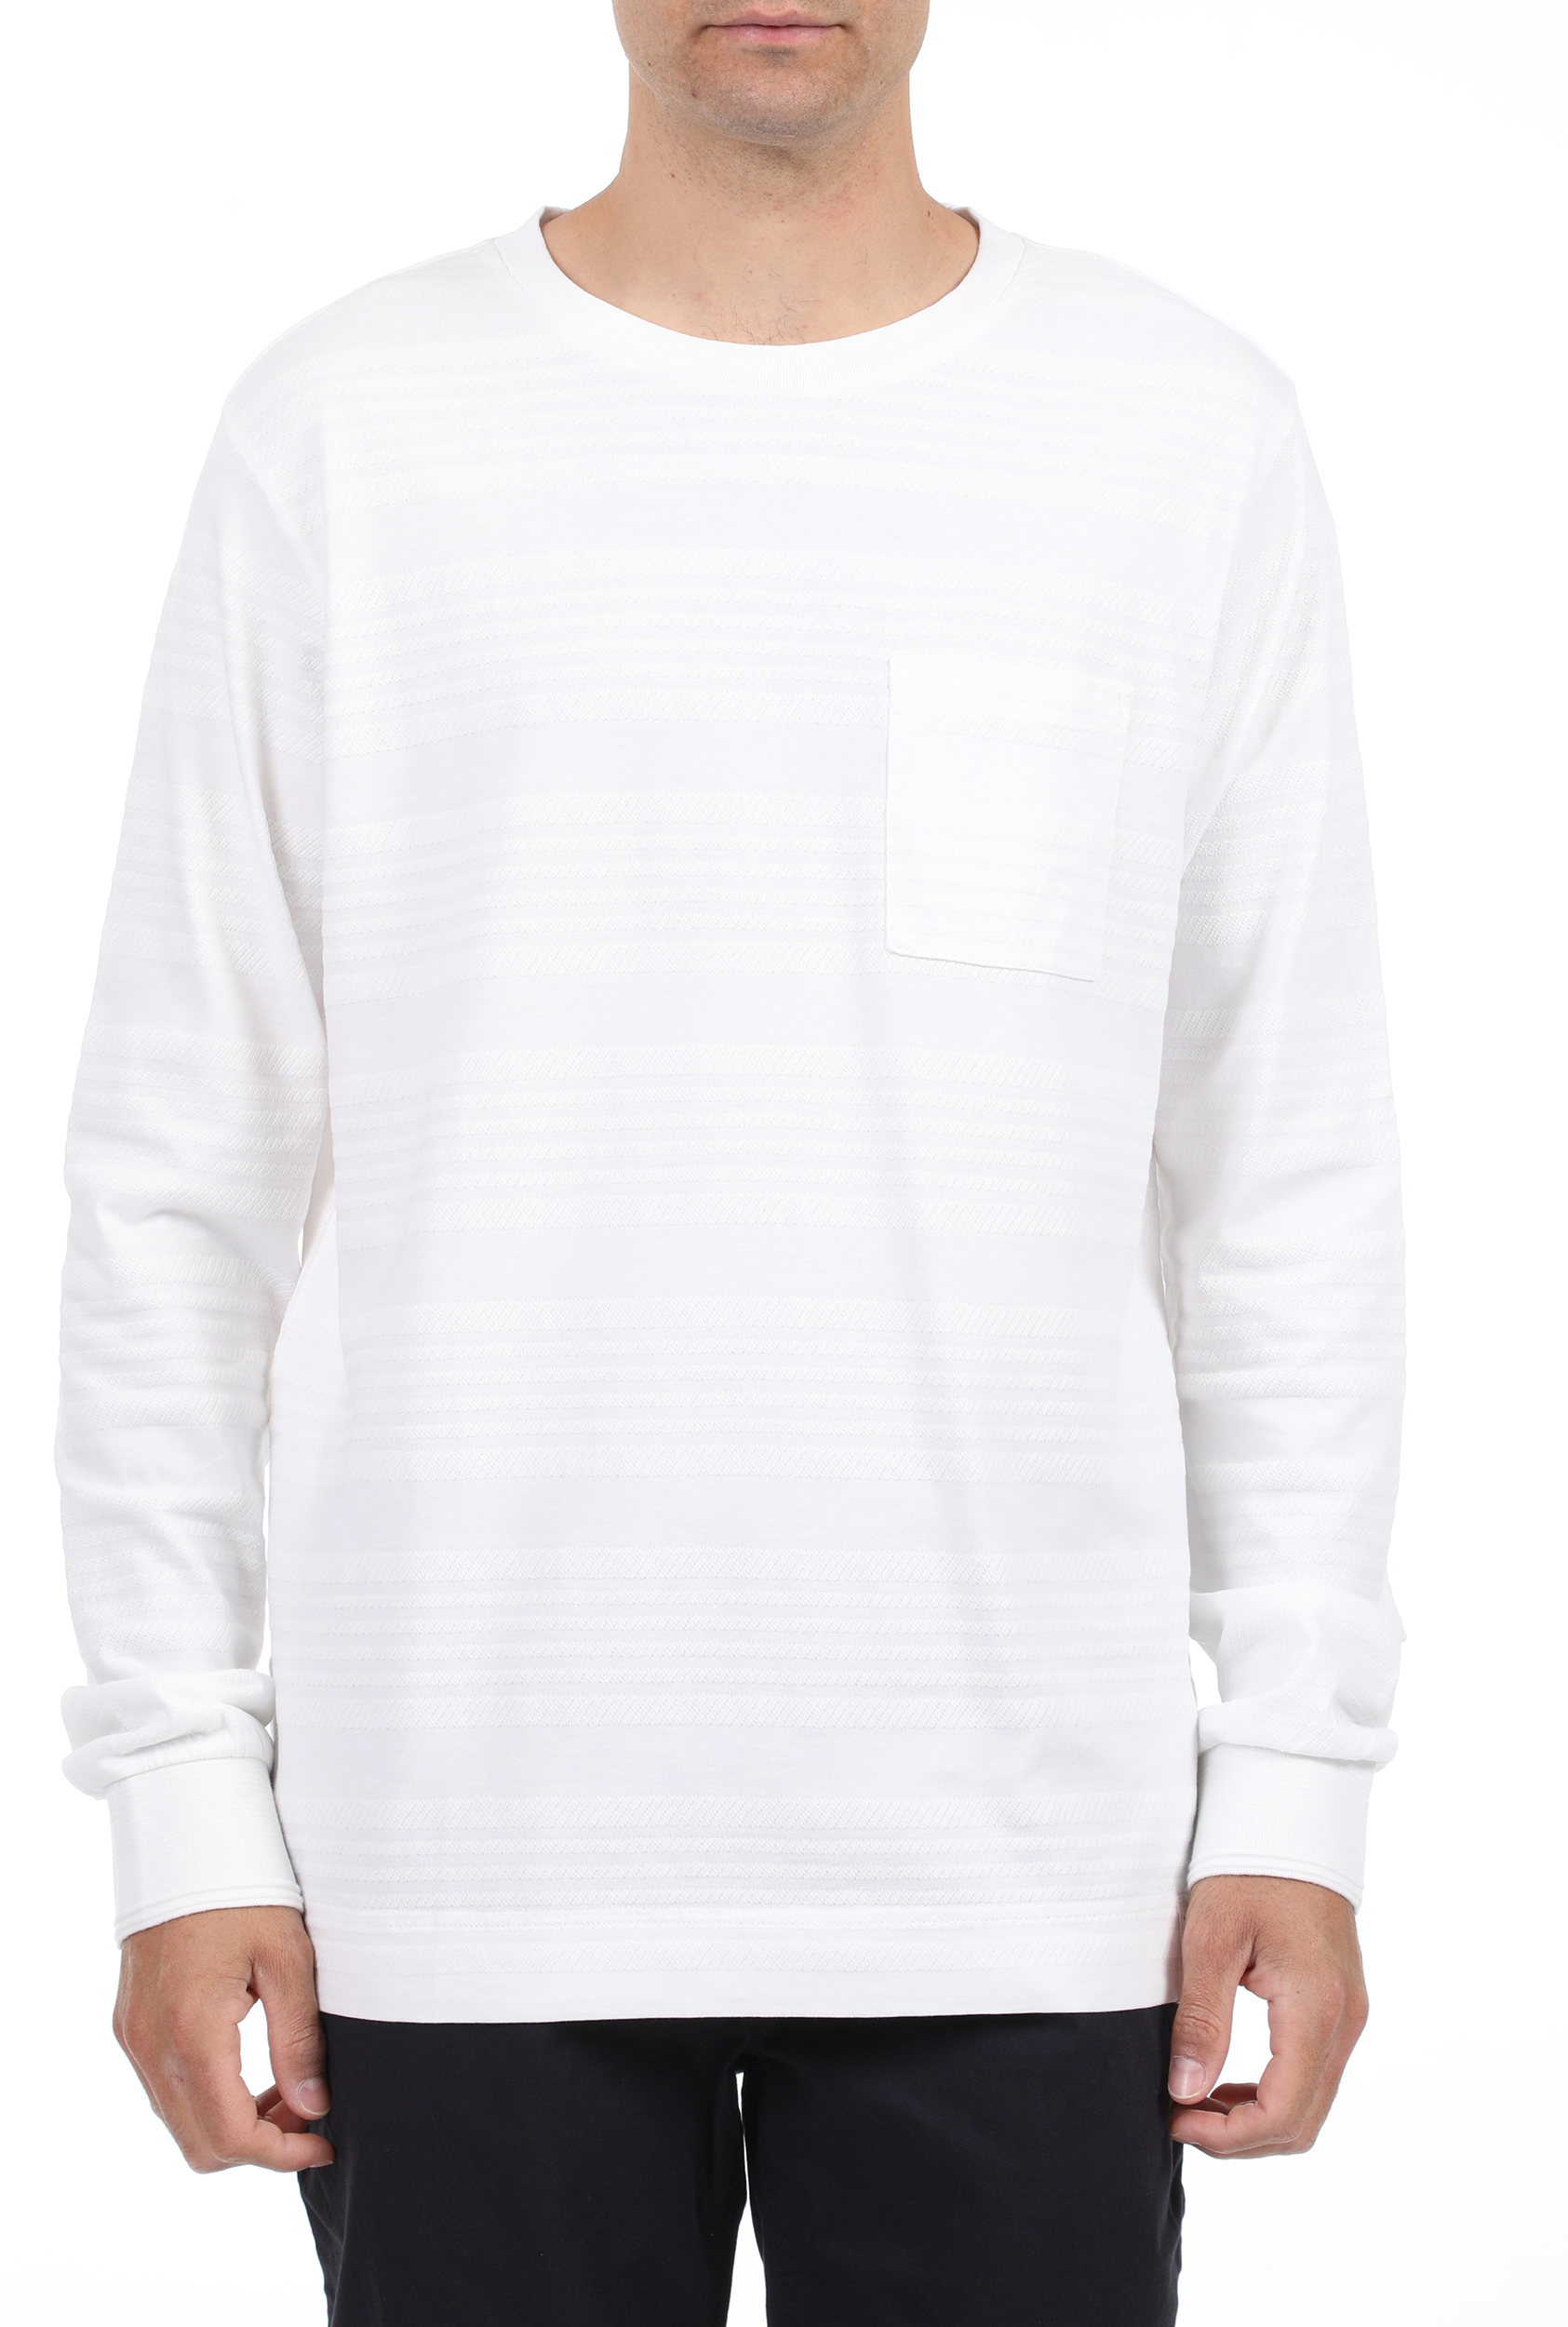 Ανδρικά/Ρούχα/Μπλούζες/Μακρυμάνικες SCOTCH & SODA - Ανδρική μπλούζα SCOTCH & SODA λευκή